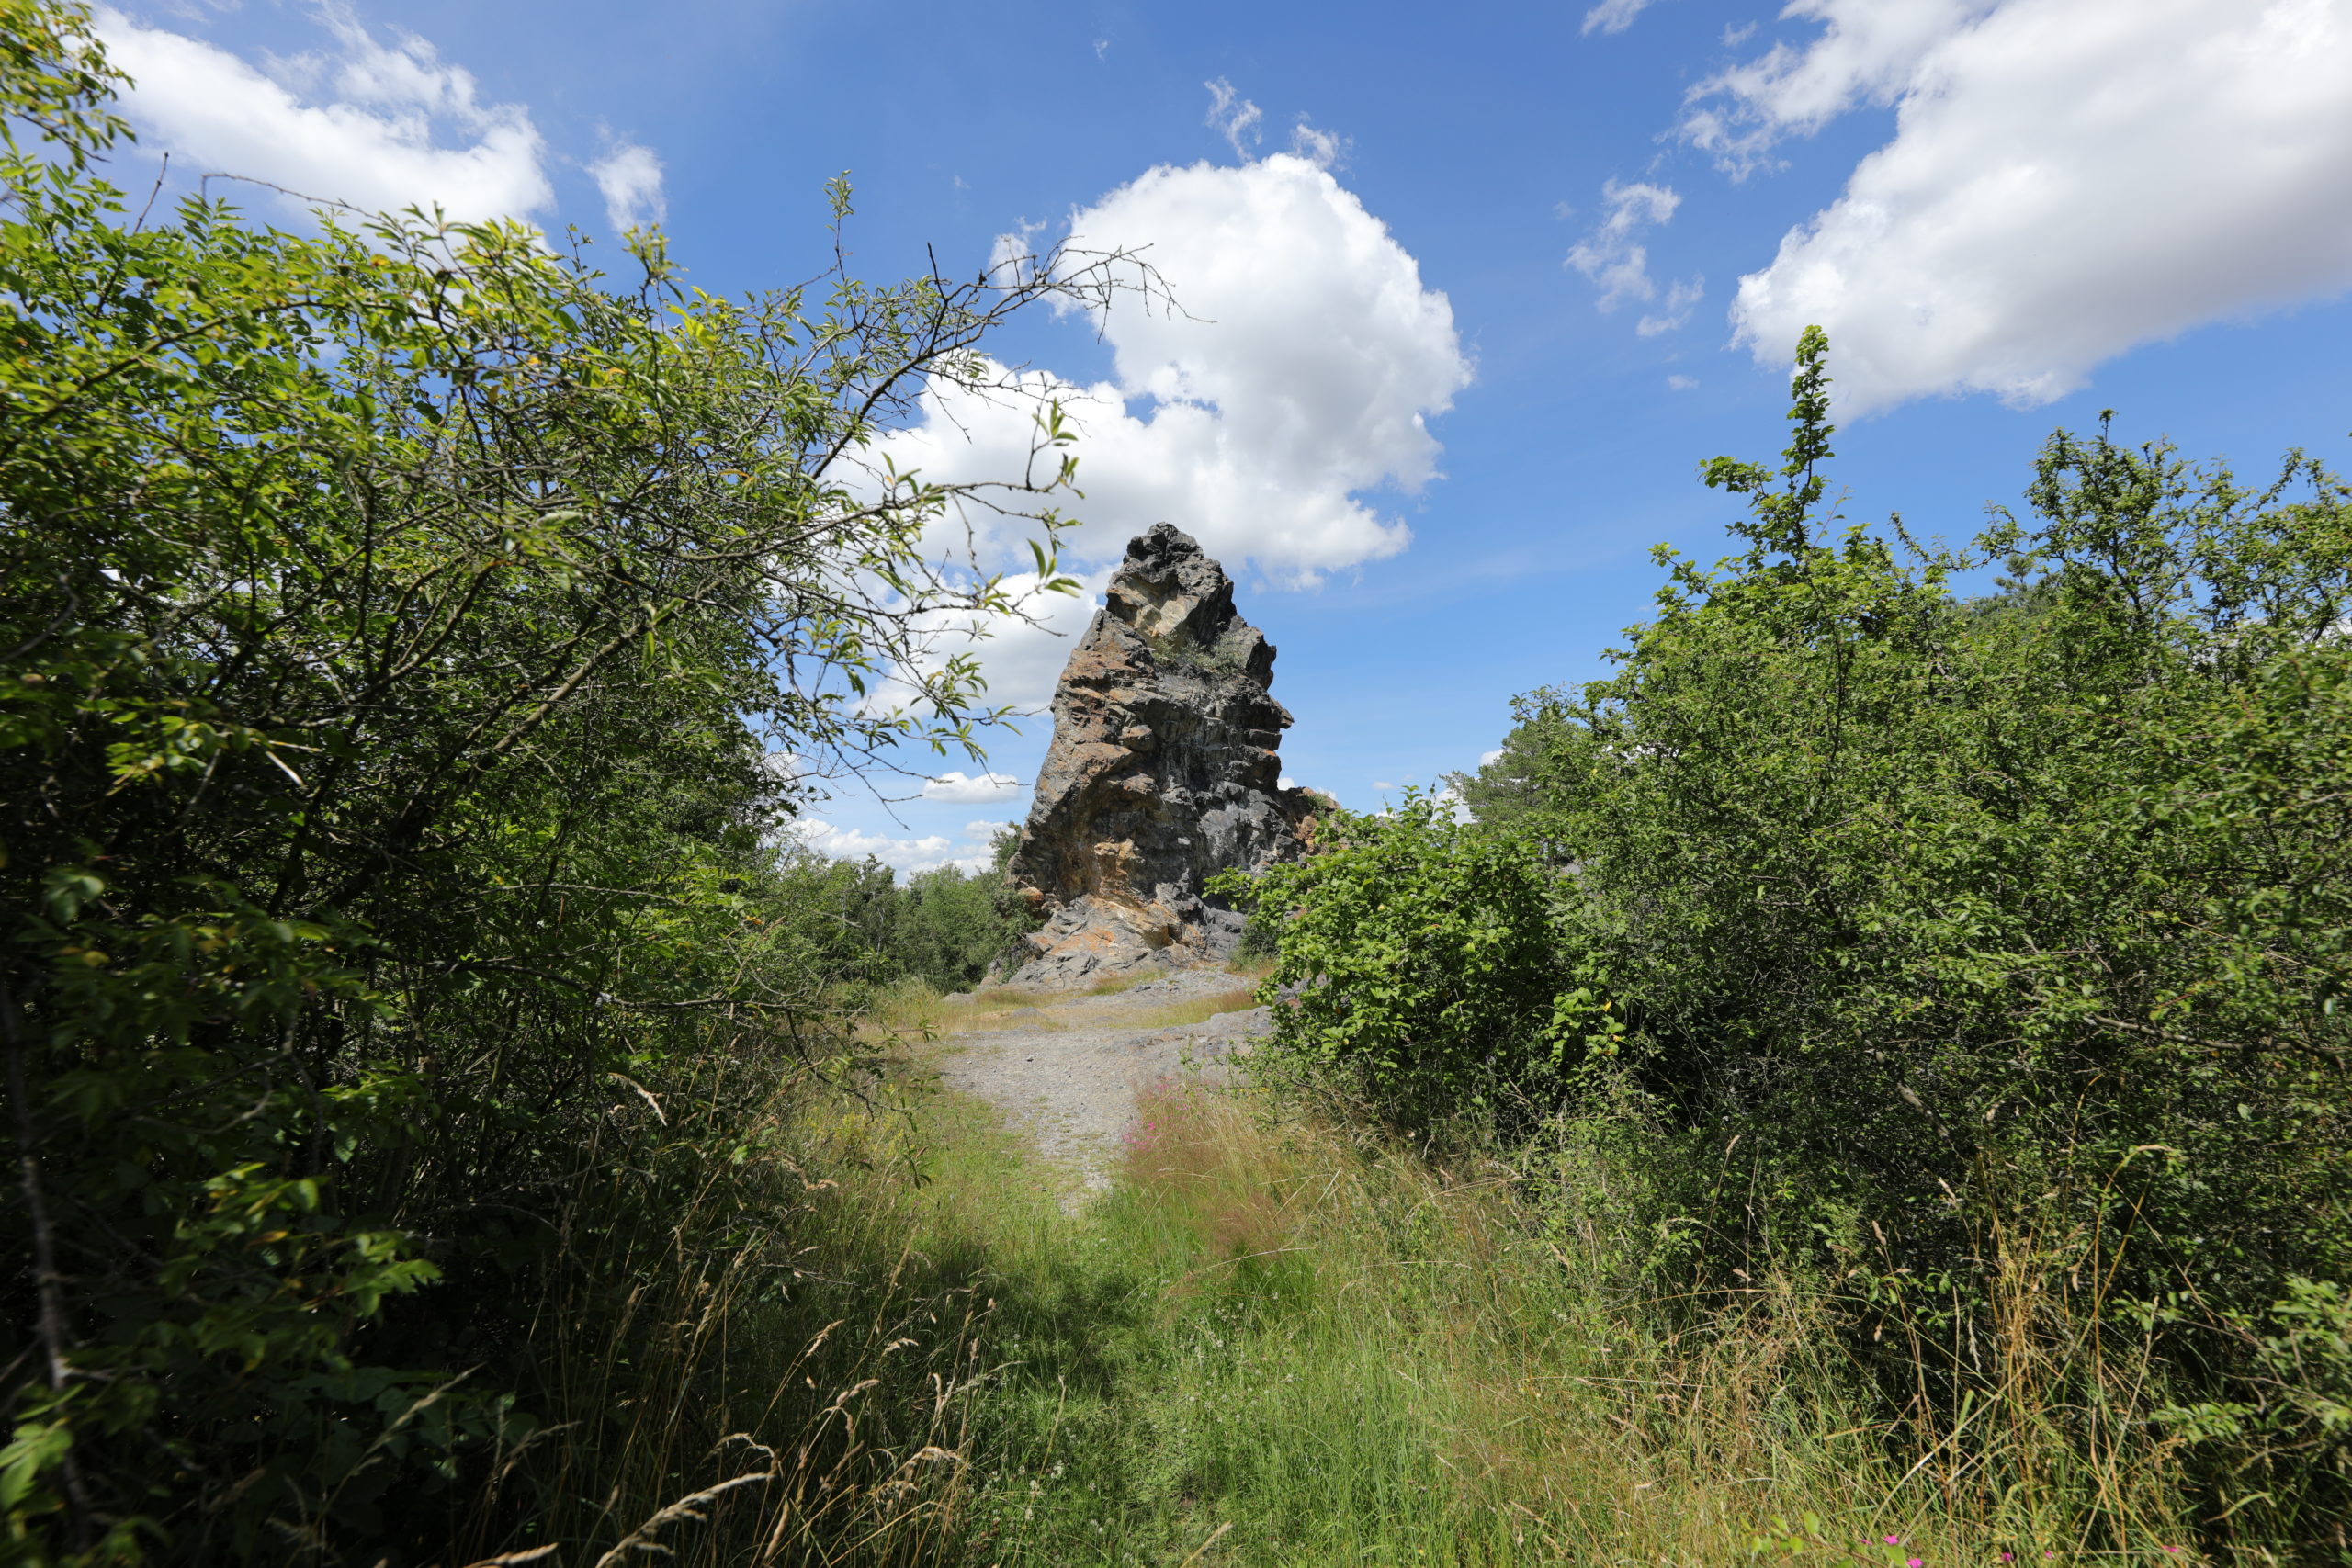 <h1>Pohled na skalní útvar Ostrá hůrka.  </h1><br />Ústředním motivem snímku je pohled na buližníkový výchoz Ostré hůrky. Pohled je situovaný z cesty mezi křovinami.